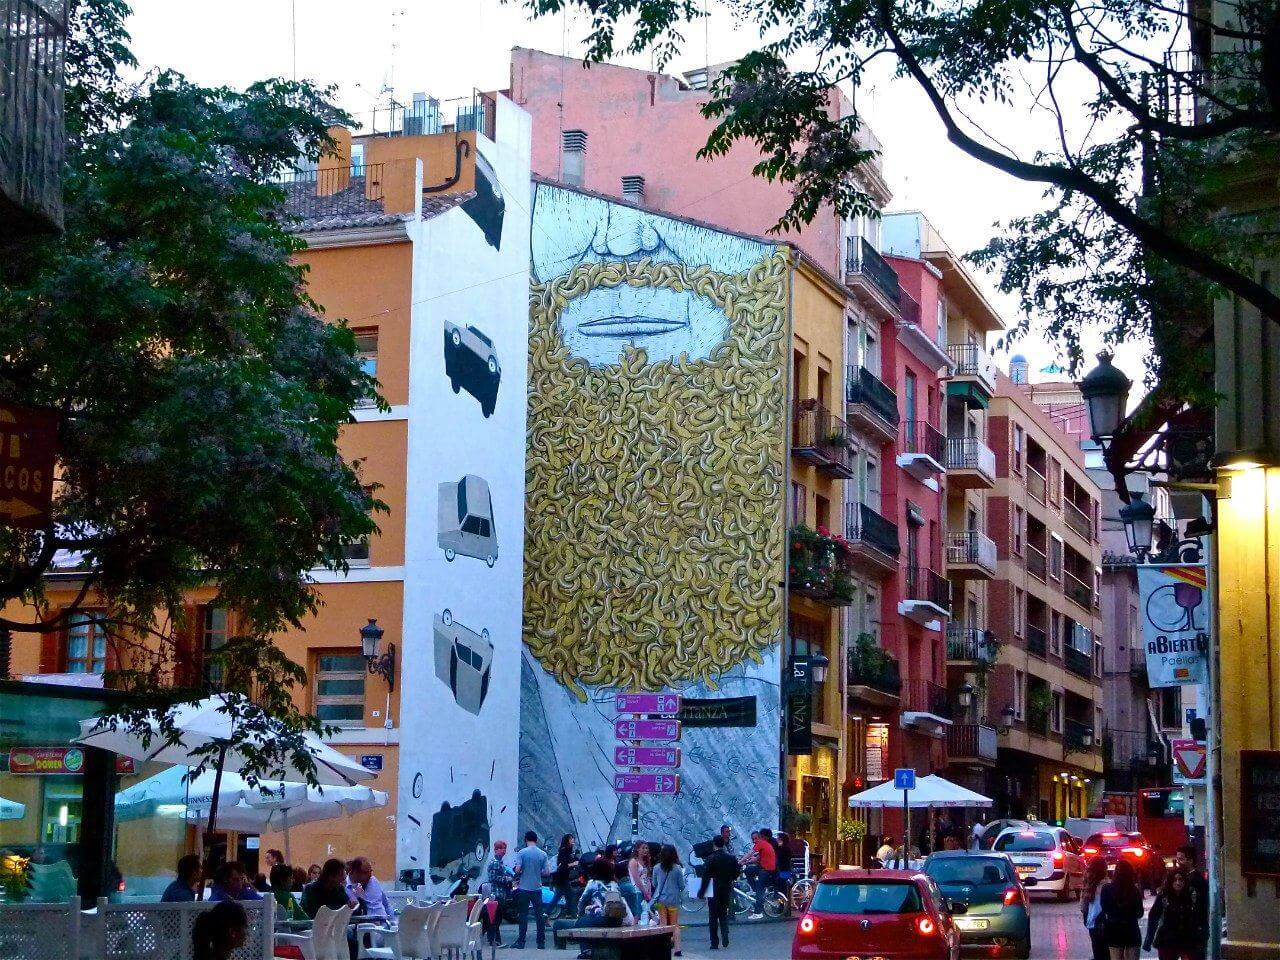 Модный район Кармен в городе Валенсия